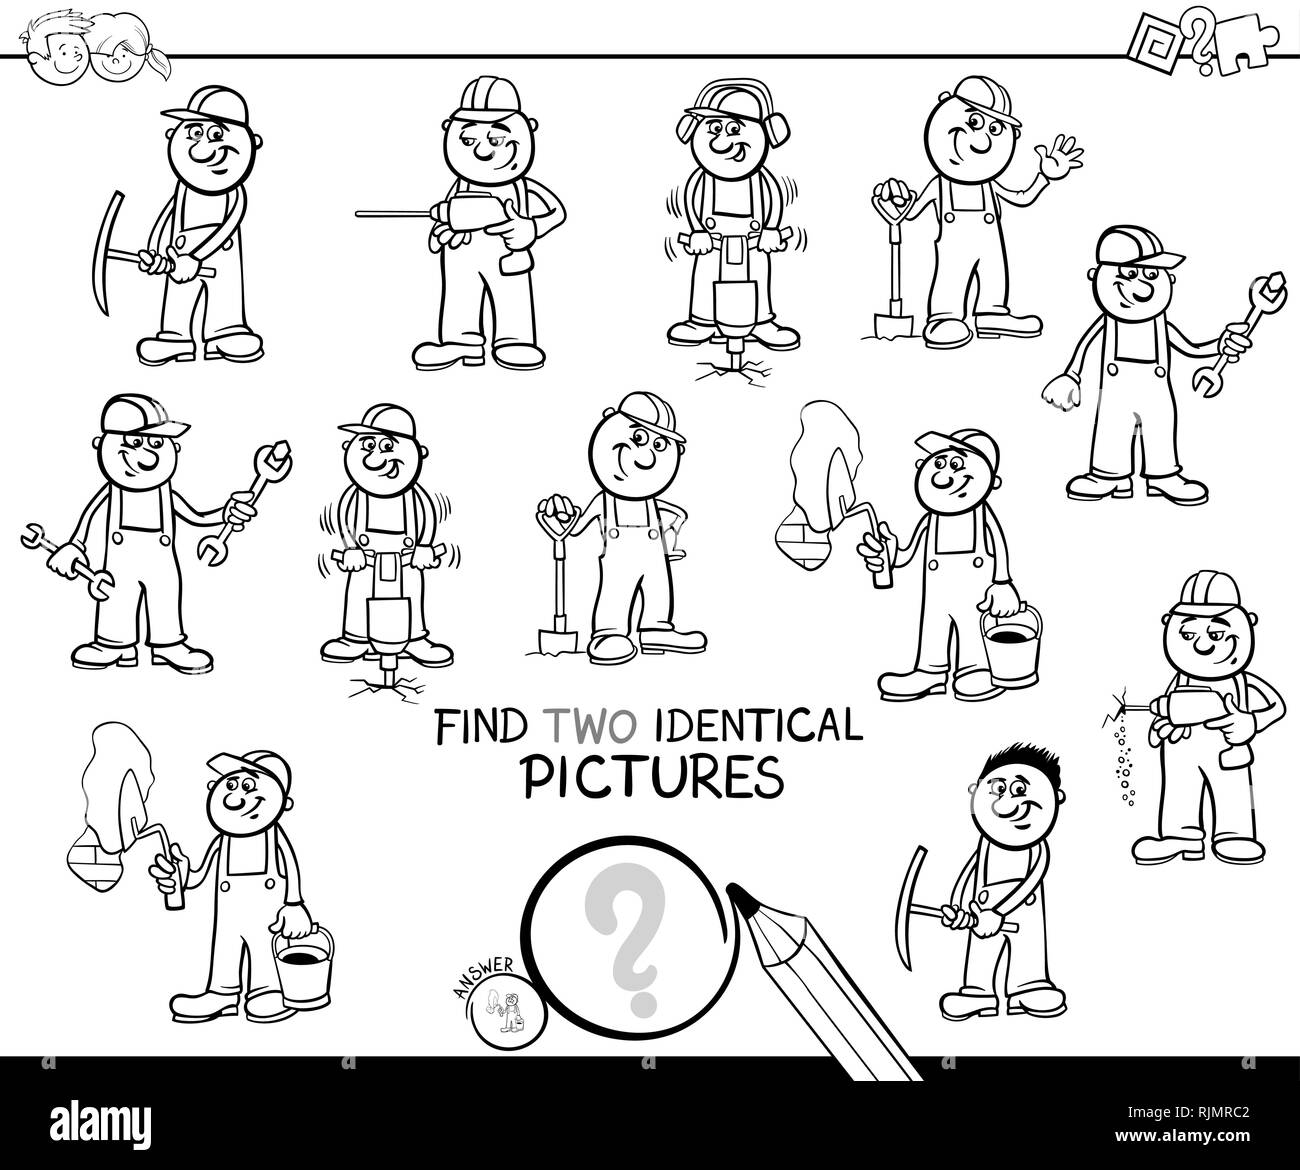 Schwarze und Weiße Cartoon Illustration, zwei identische Bilder Lernspiel für Kinder mit lustigen Arbeiter und Bauherren bei der Arbeit Malbuch Stock Vektor